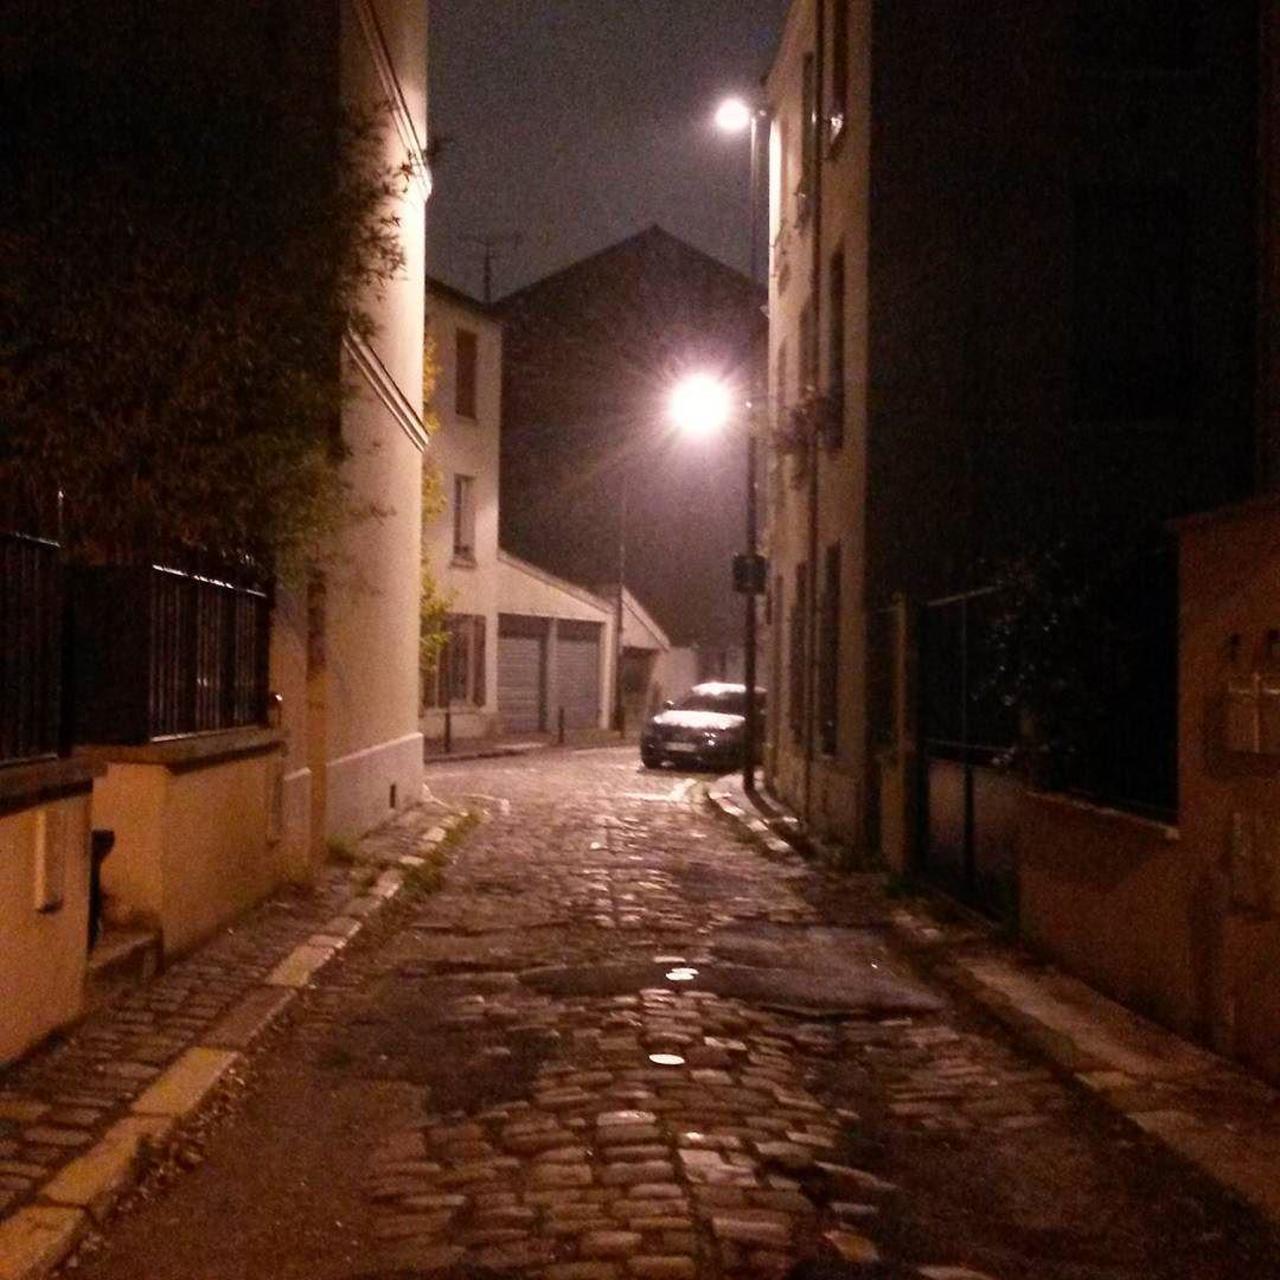 #Paris #graffiti photo by @le_cyclopede http://ift.tt/1kb3pdK #StreetArt http://t.co/eJPEKRlsIe